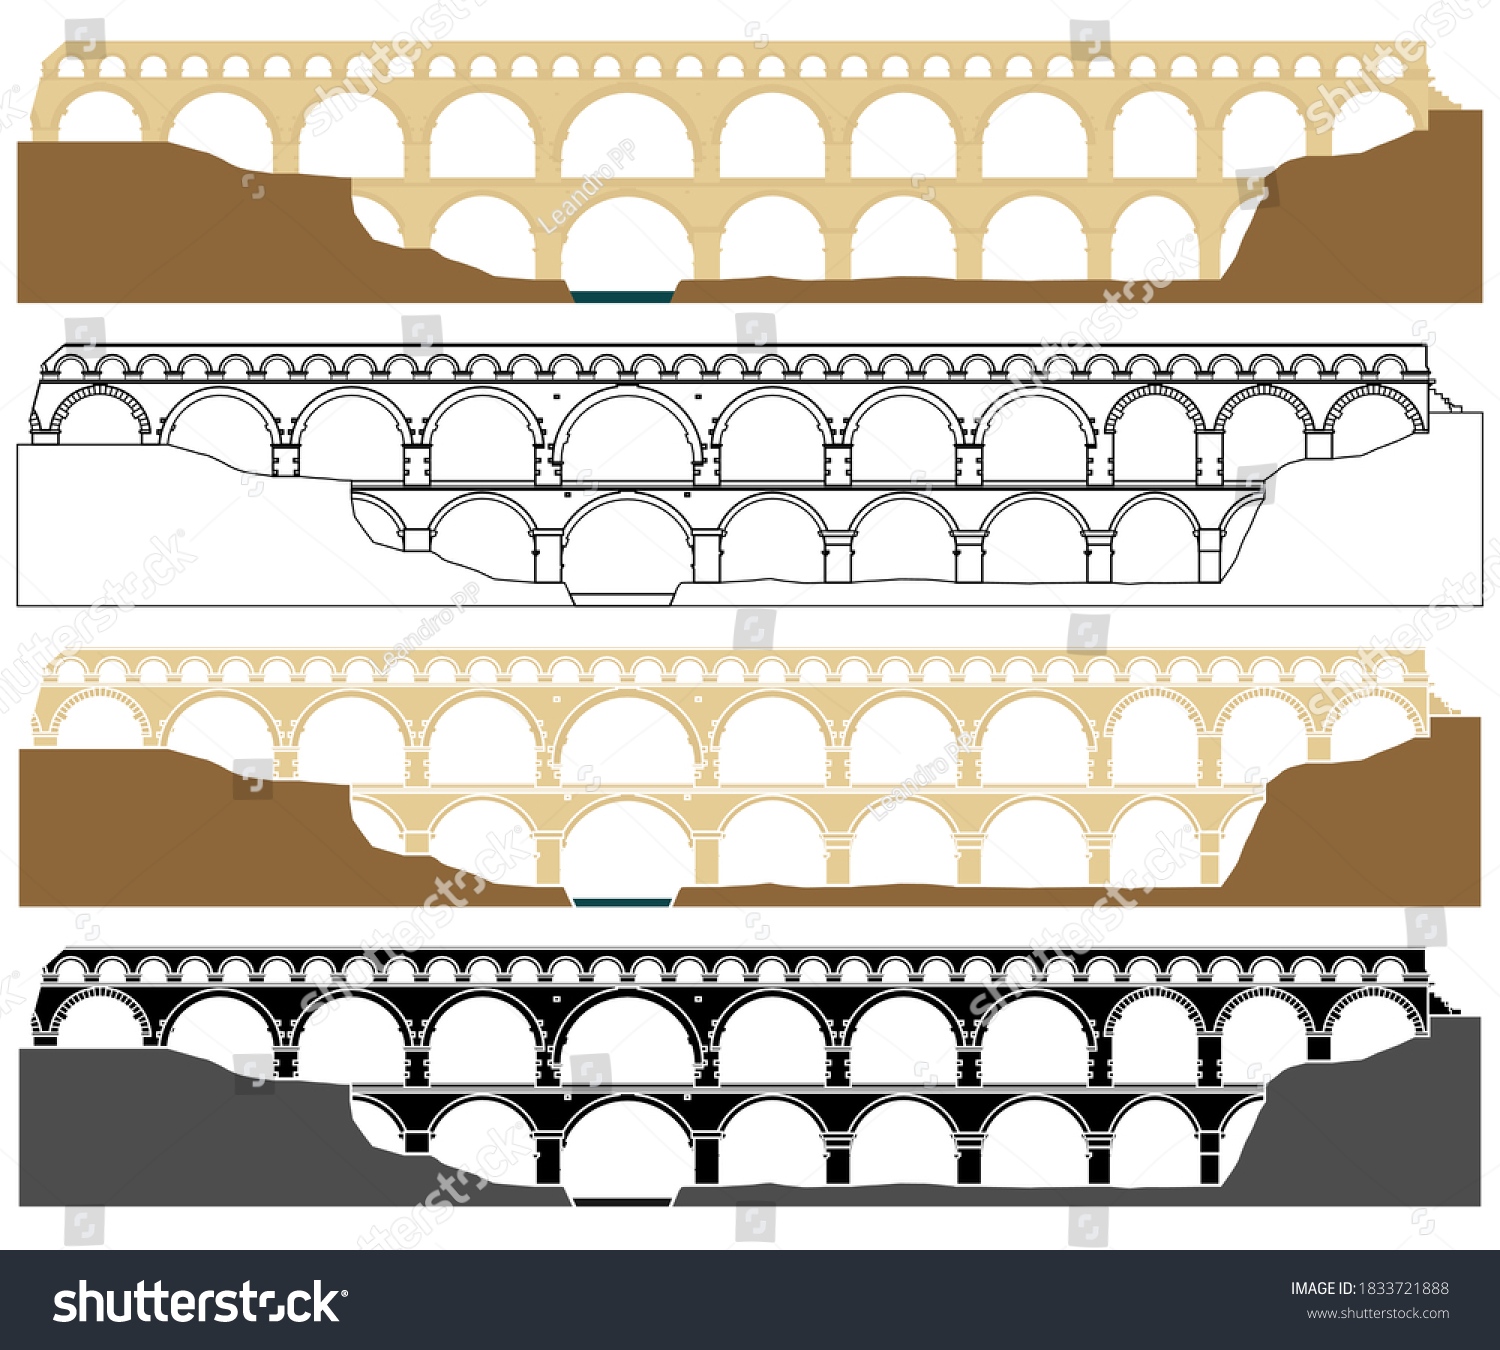 SVG of Pont du Gard, aqueduct in France svg